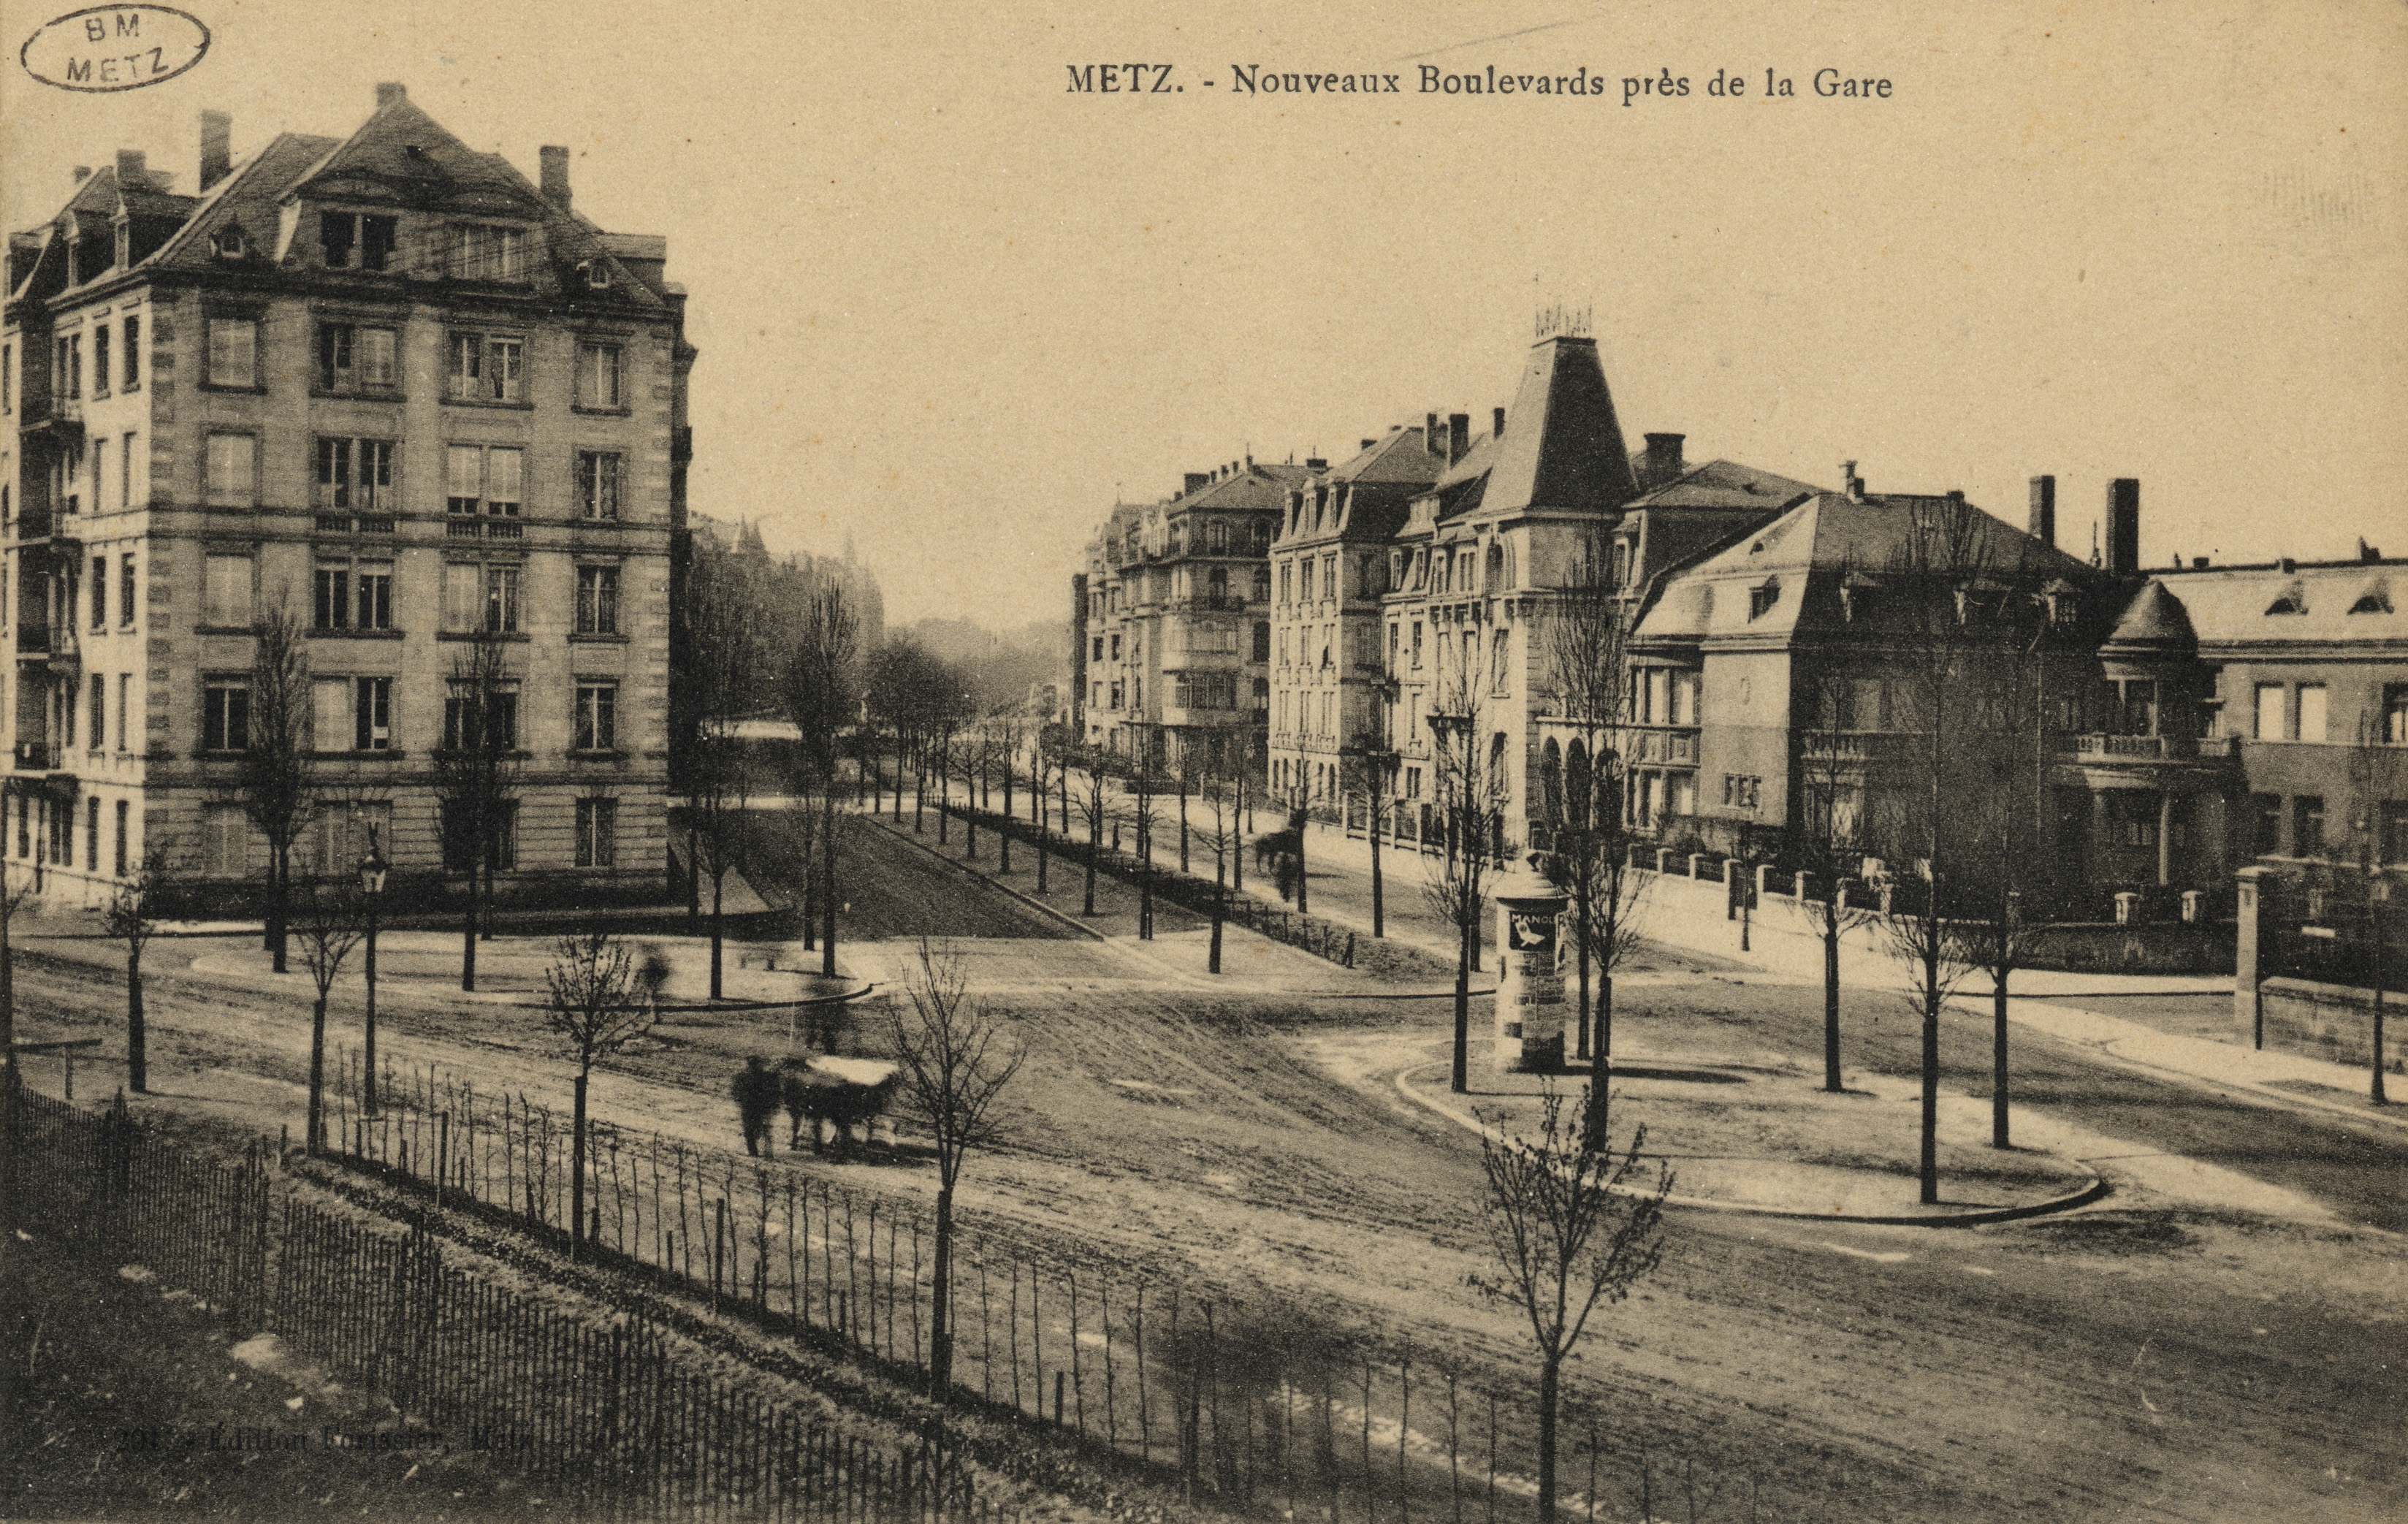 Contenu du Metz. Nouveaux Boulevards près de la Gare